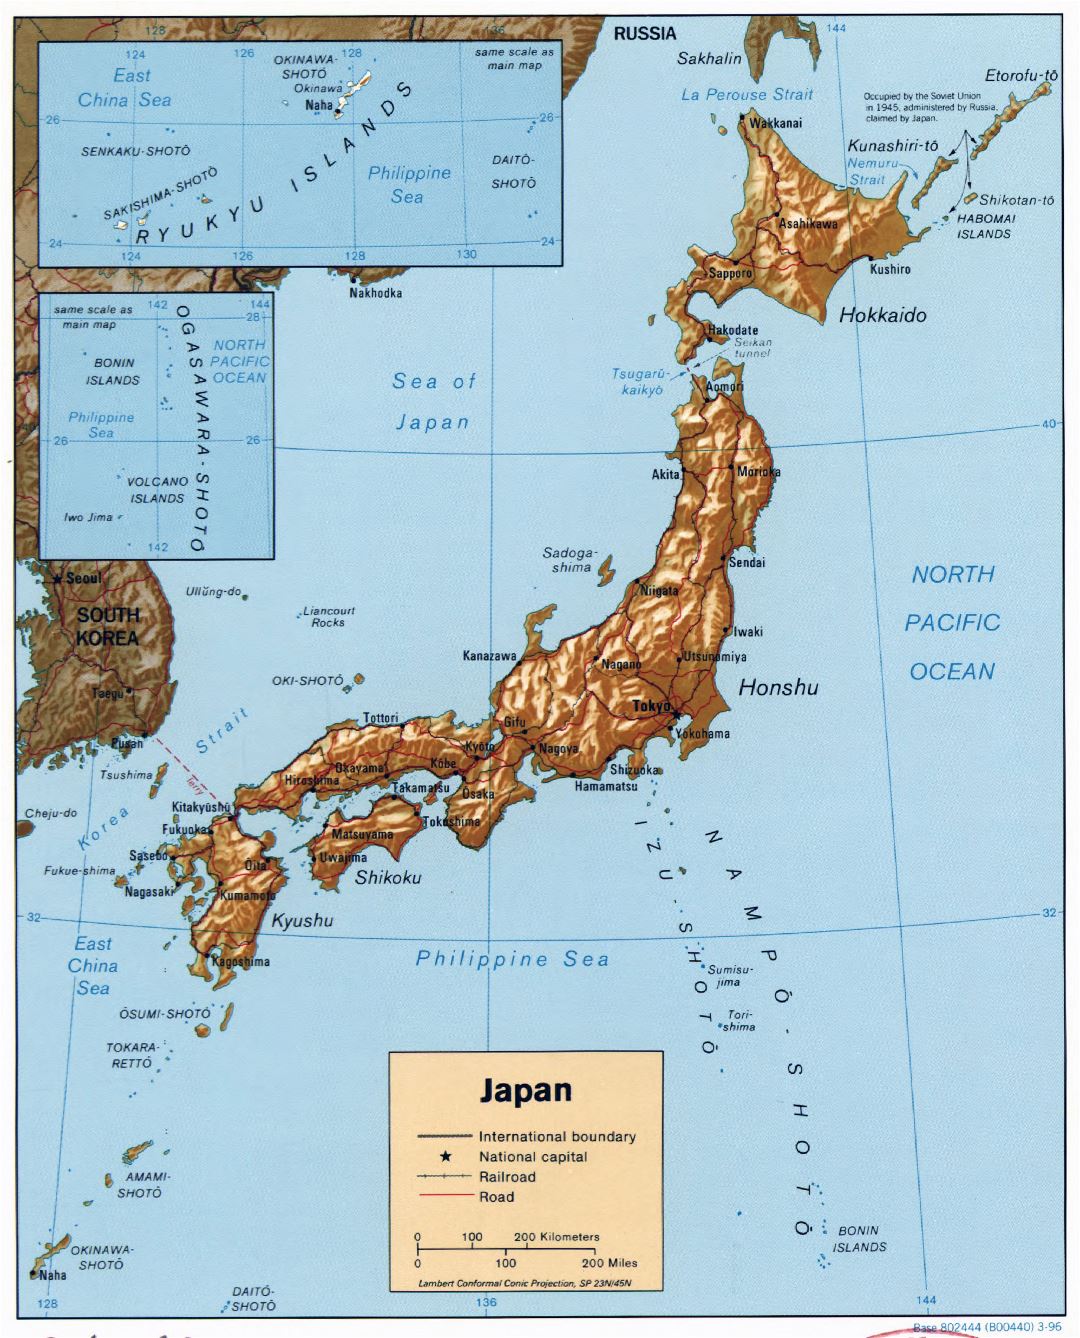 Grande detallado mapa político de Japón con relieve, carreteras, ferrocarriles y principales ciudades - 1996